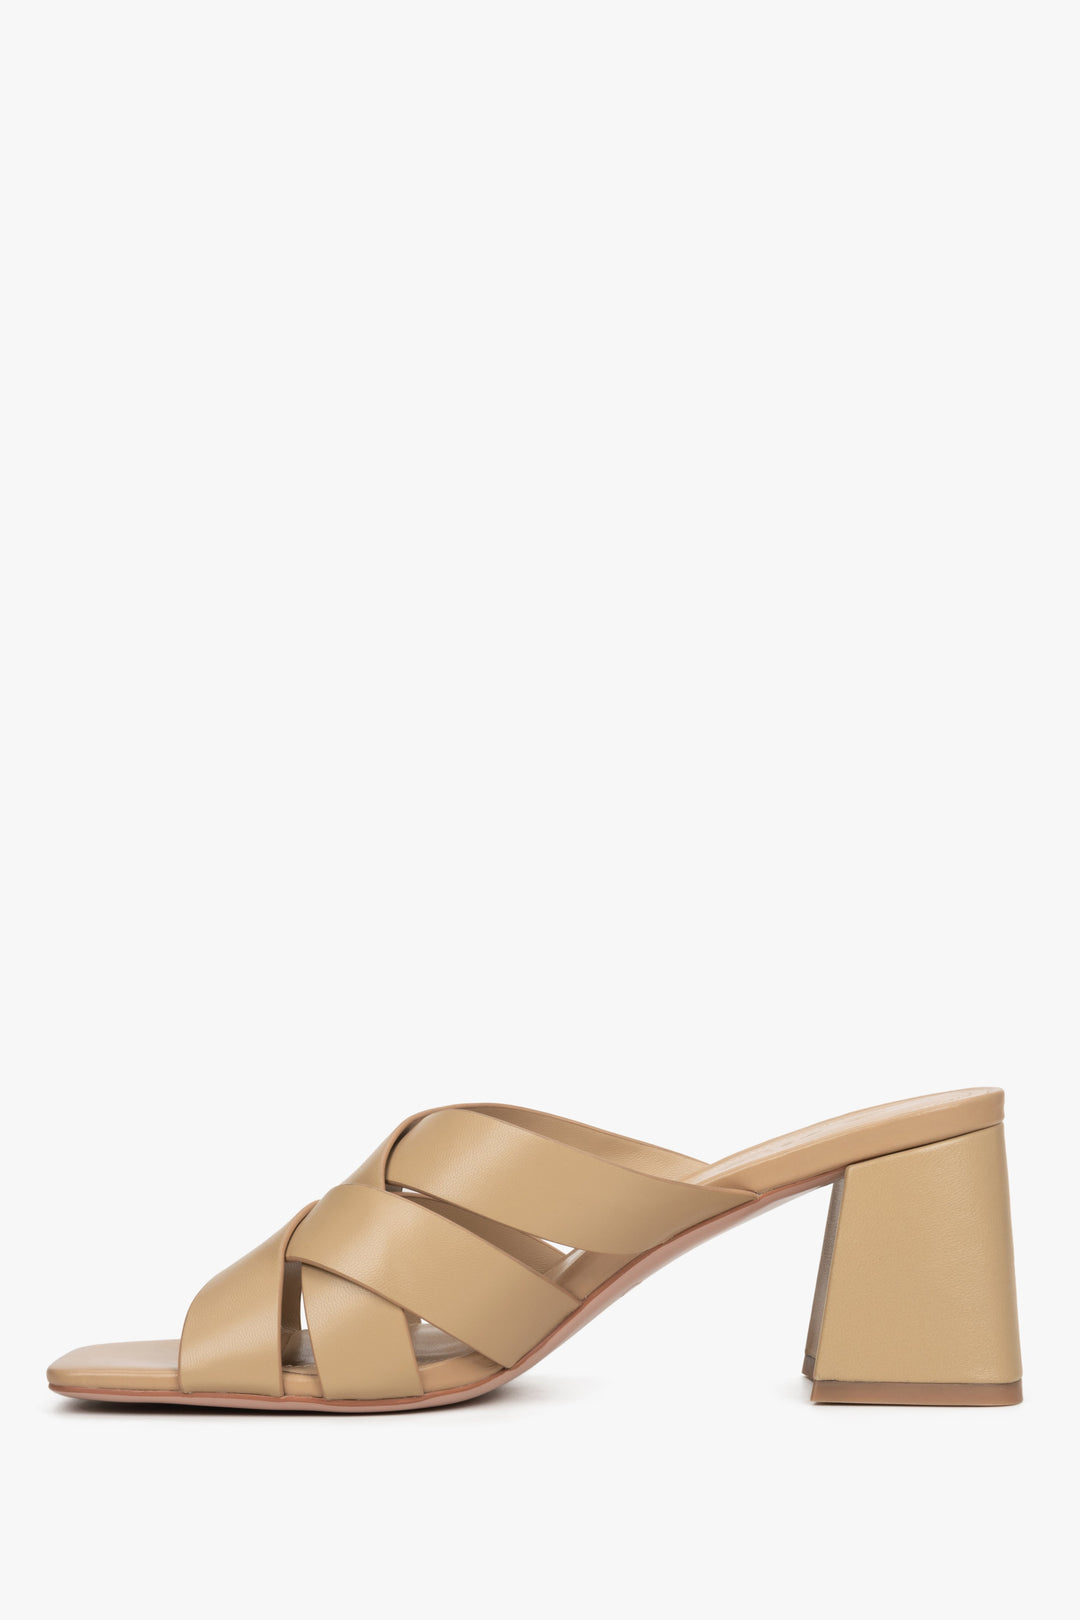 Estro women's beige sandals with a block heel - shoe profile.